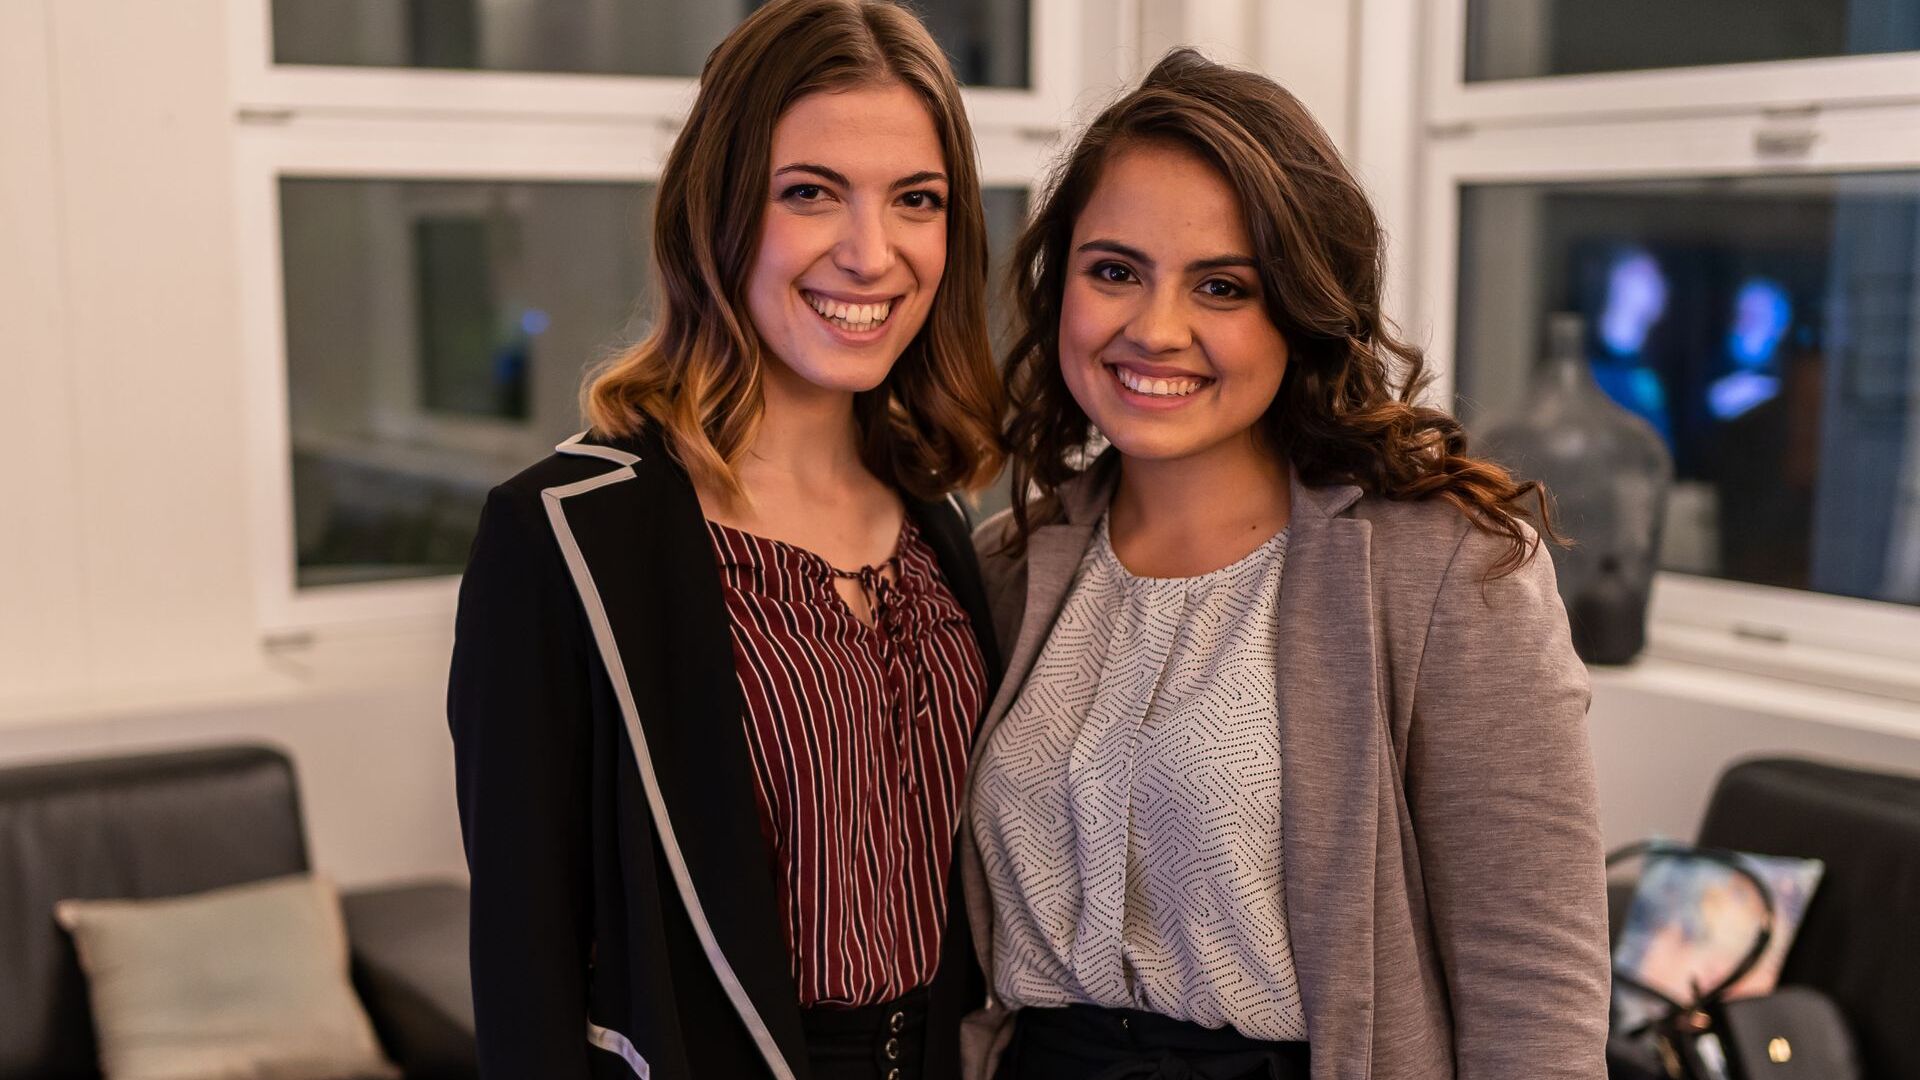 Alessandra Capurro e Flavia Wallenhorst sono state finaliste della graduatoria “NextGen Hero” ai “Digital Economy Award” 2021